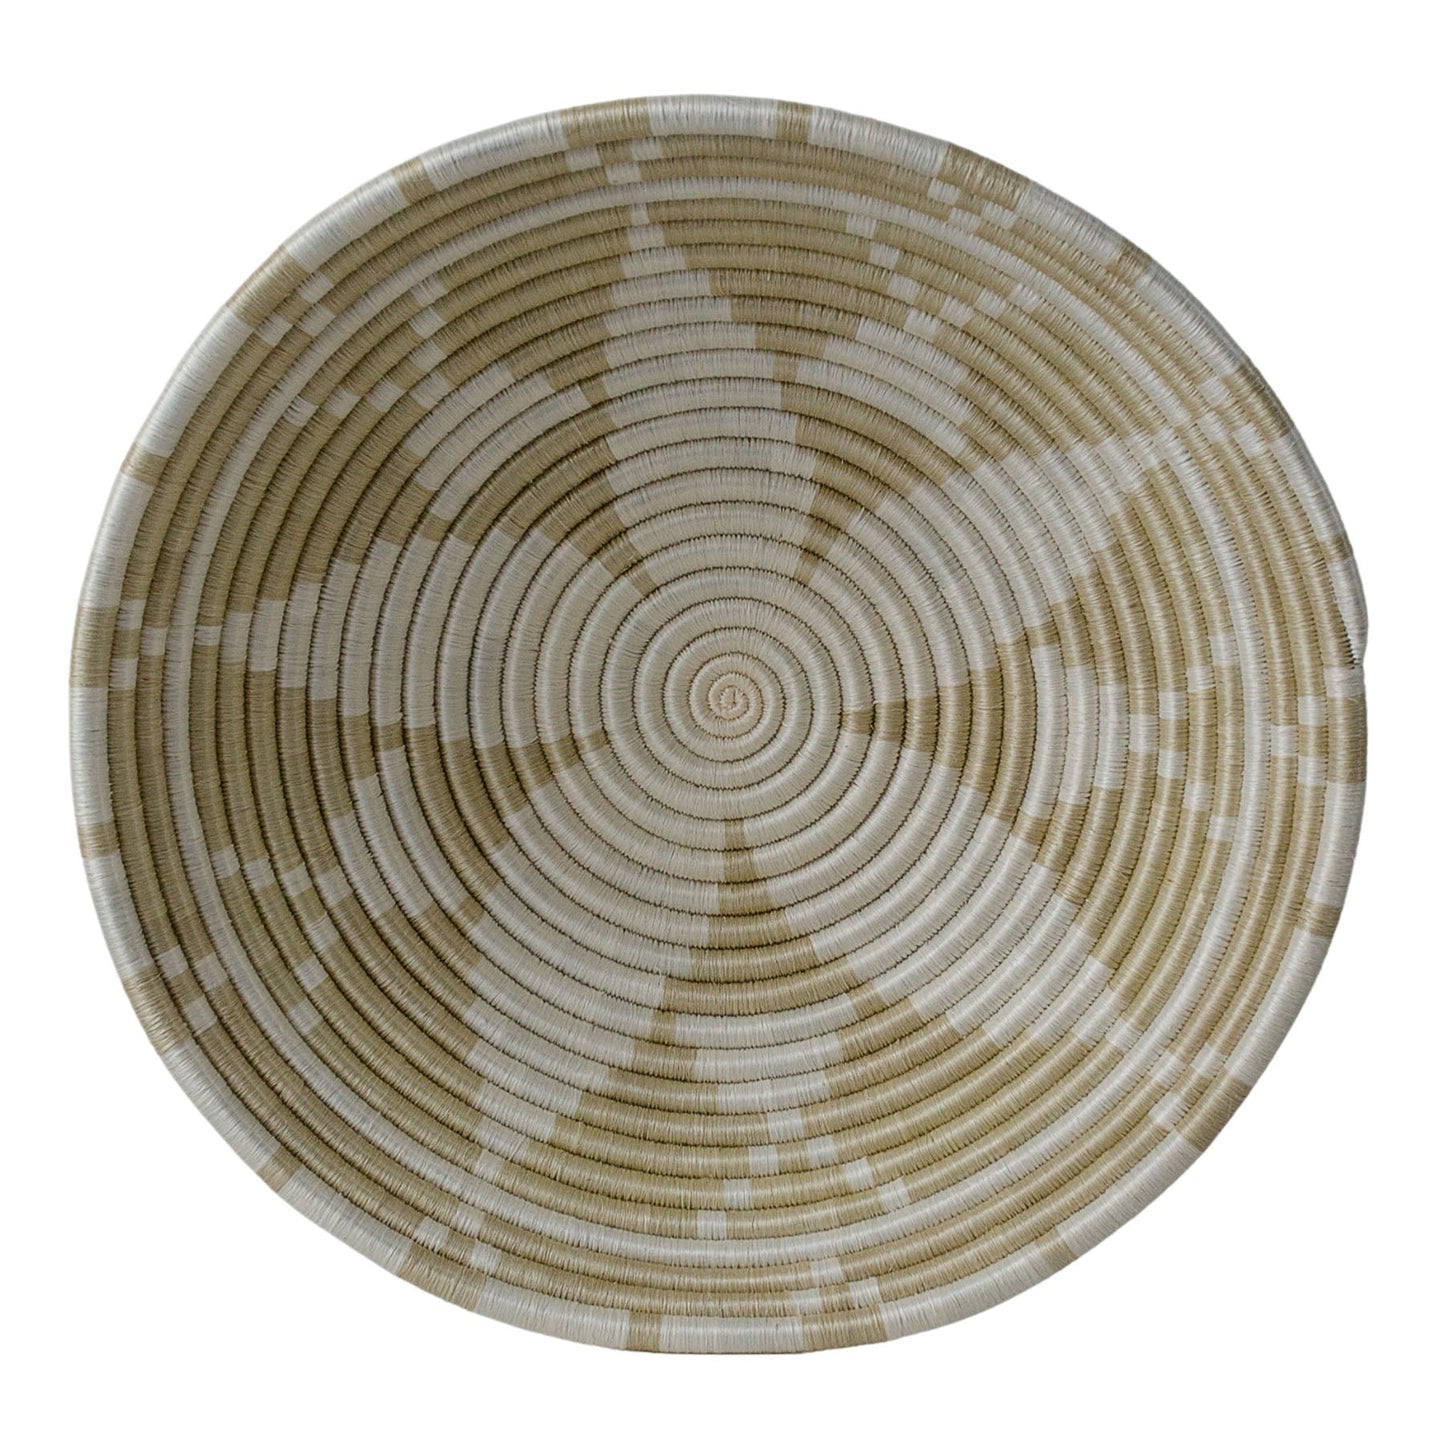 14" Extra Large Wheat Izere Round Basket | Home Decor